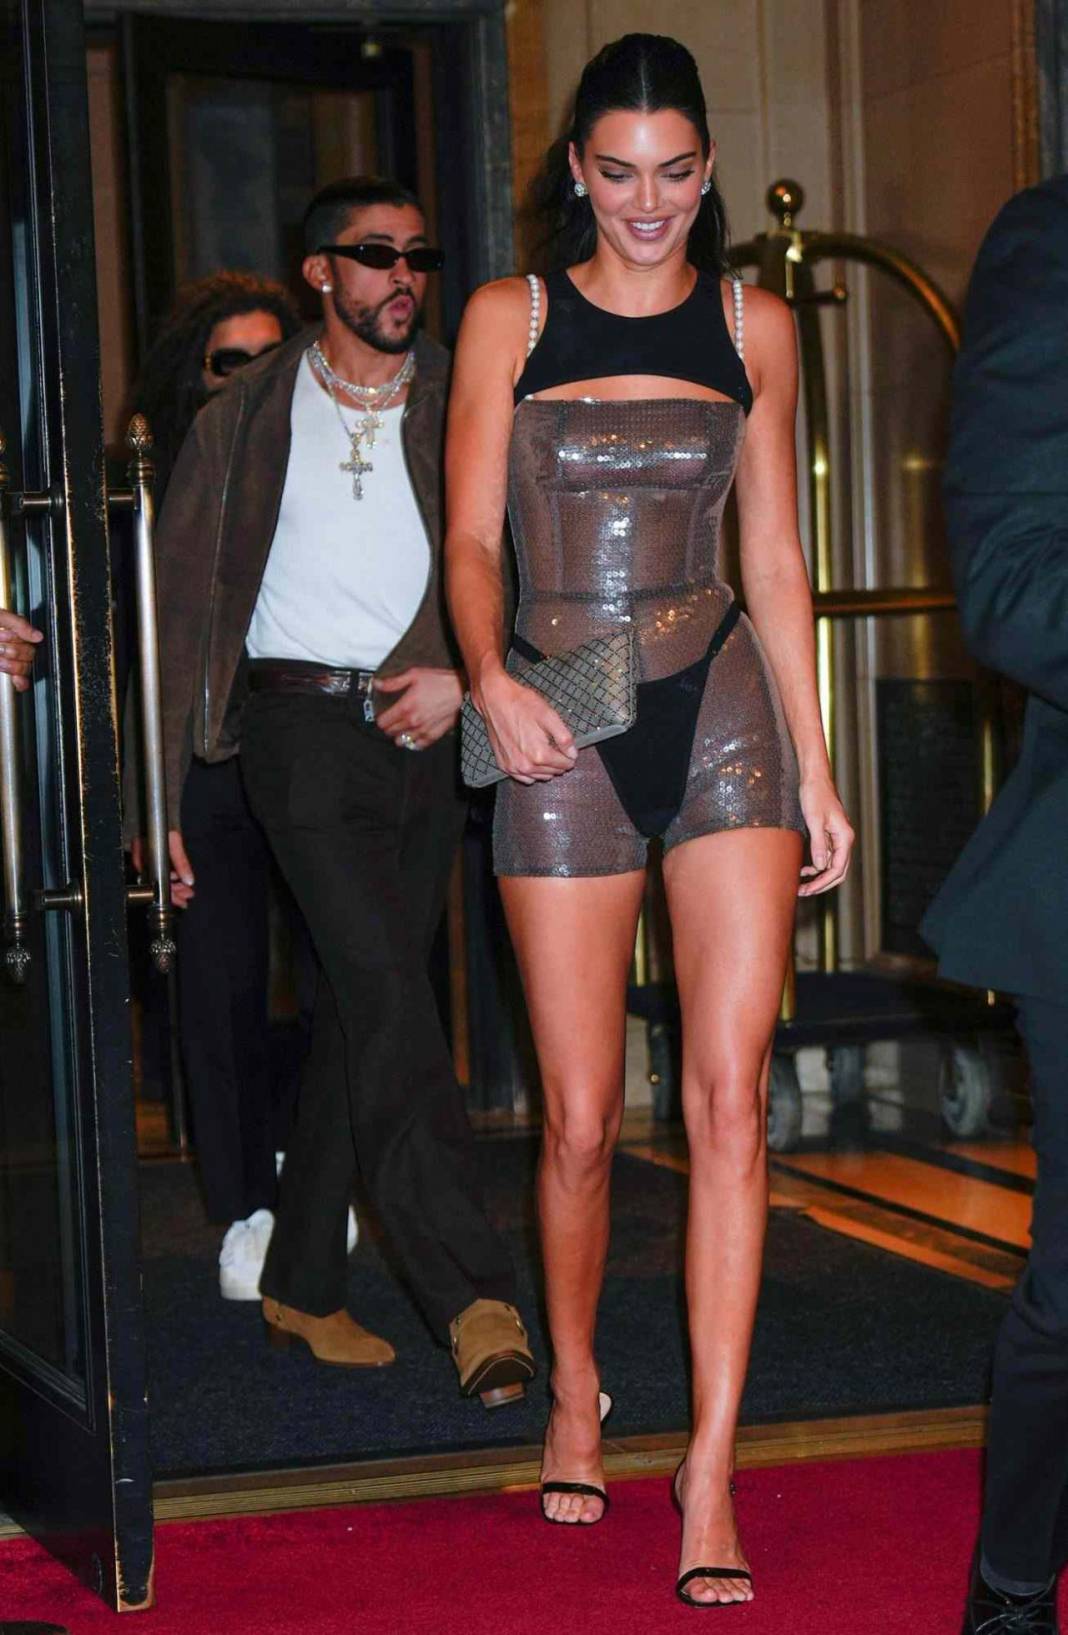 Ünlü model Kendall Jenner parti tarzıyla olay oldu! "Sanki elbise eksik kalmış" yorumları yapıldı 8